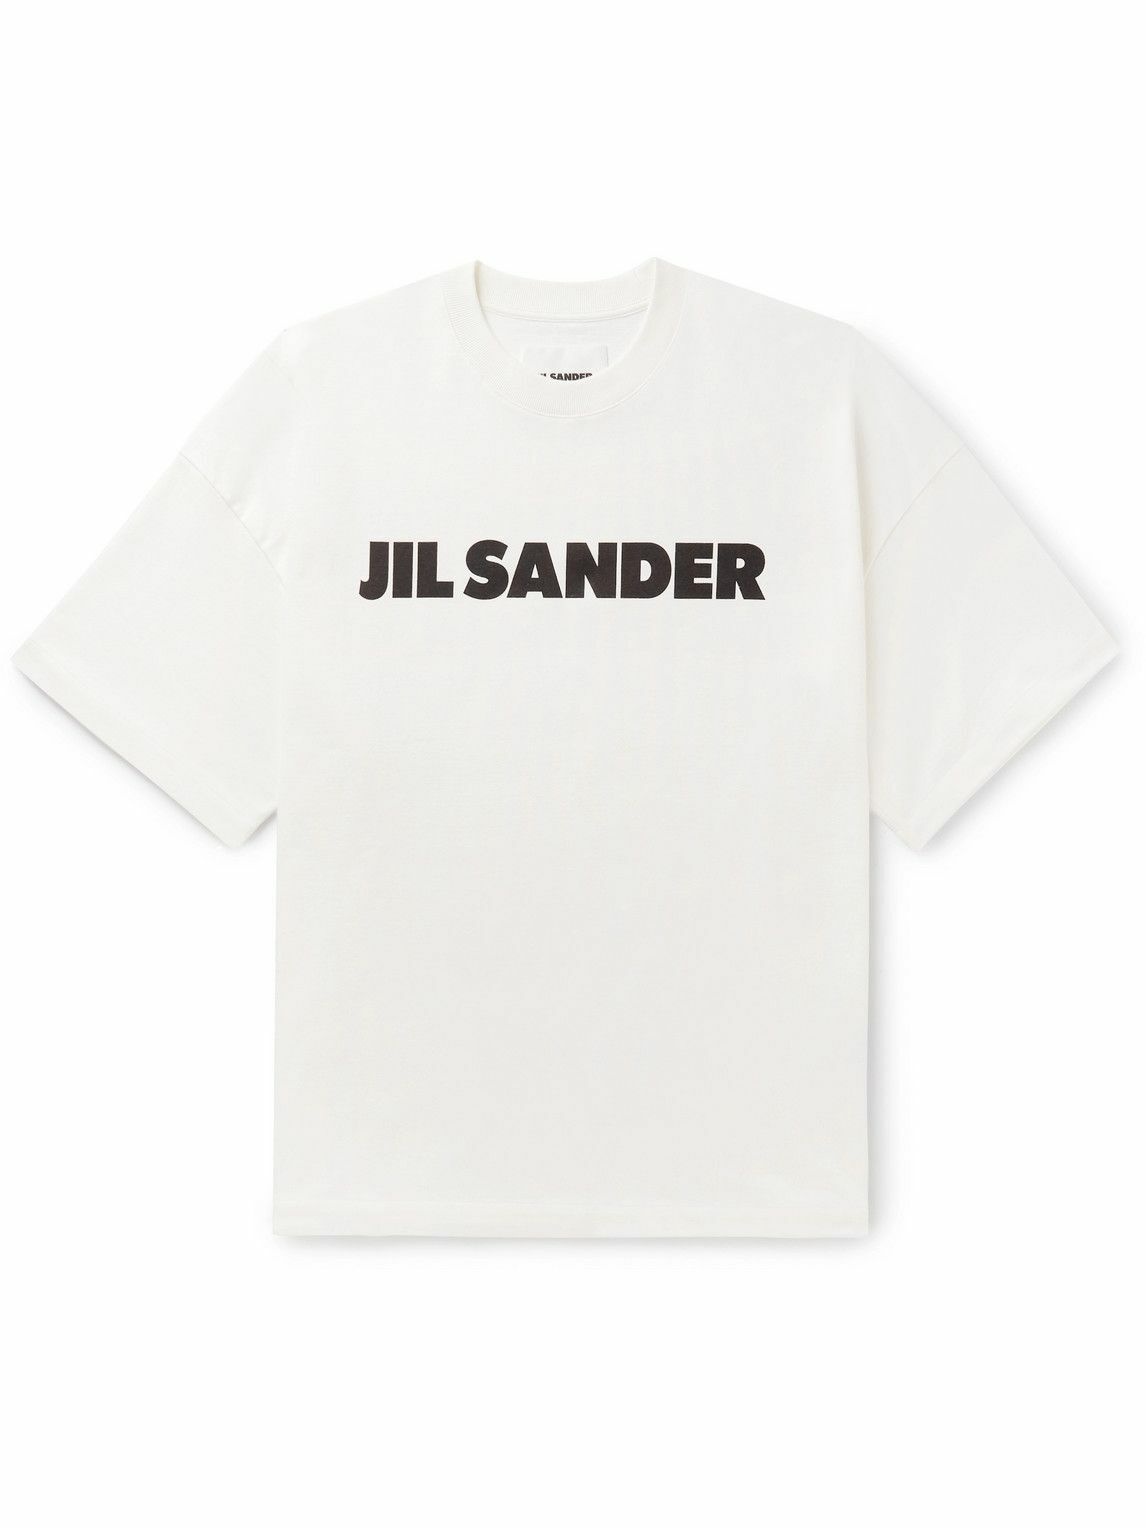 Jil Sander - Logo-Print Cotton-Jersey T-Shirt - White Jil Sander